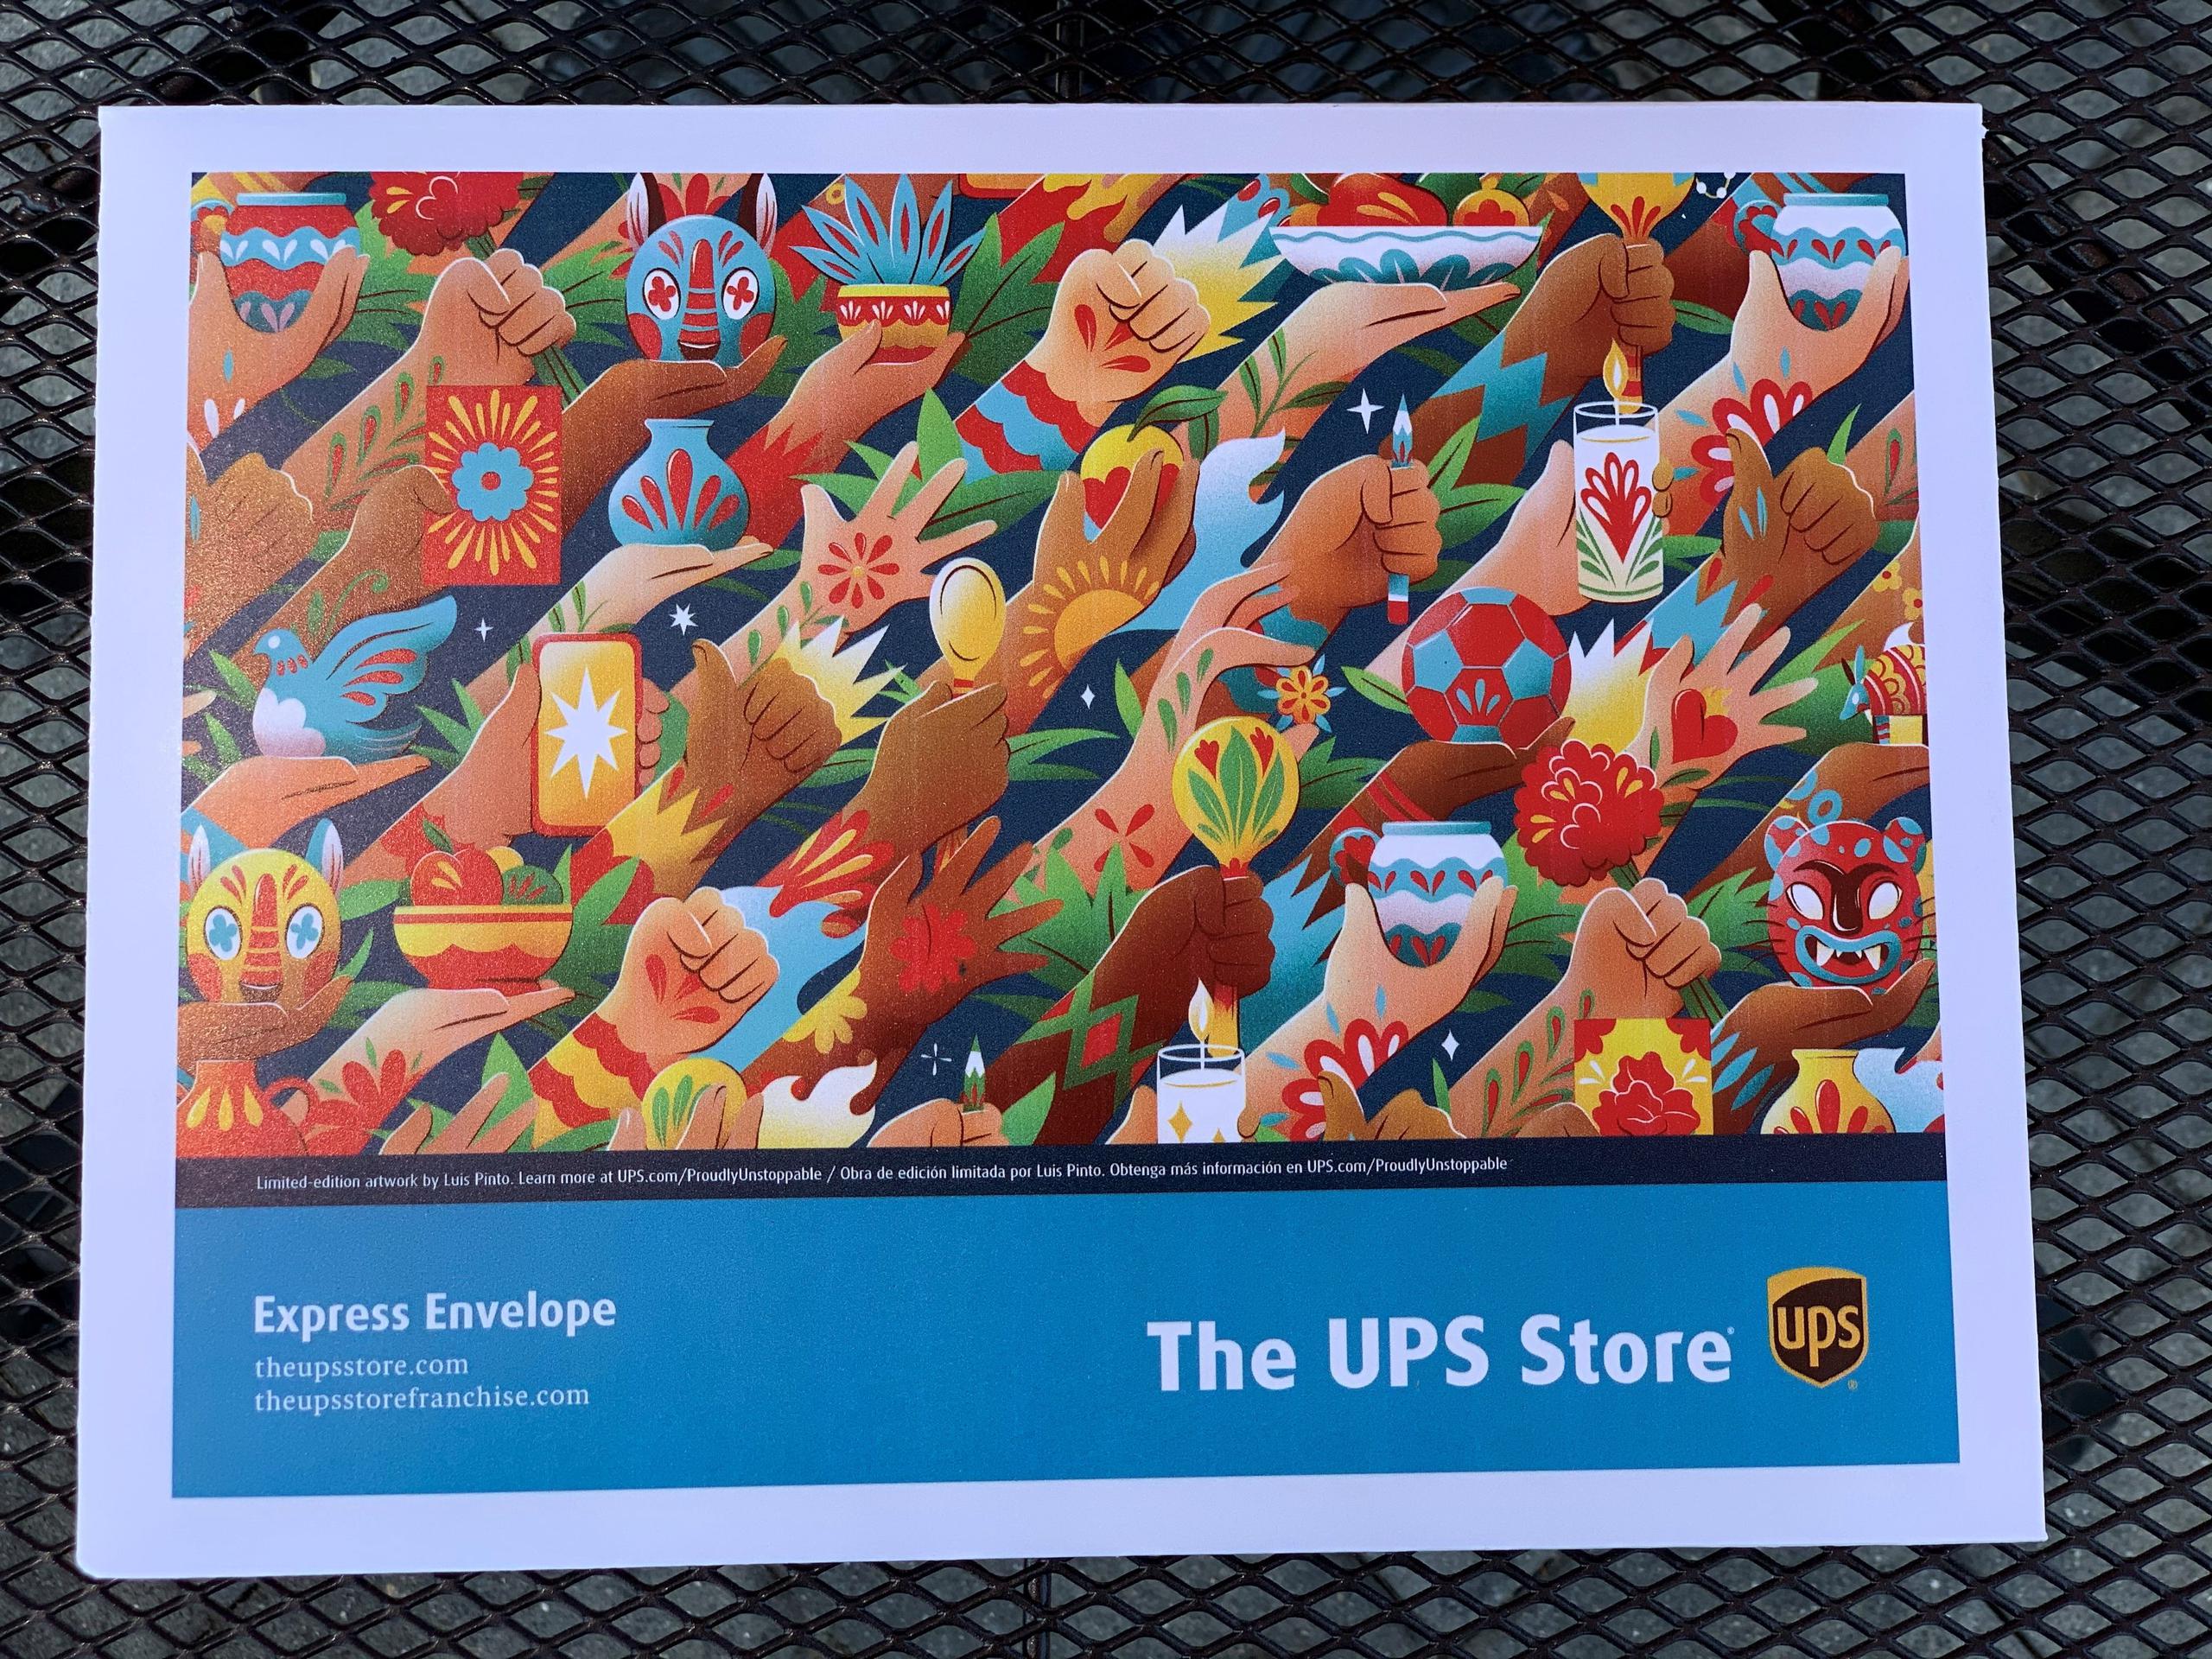  Fotografía cedida por UPS donde se muestra la obra "Los desafíos son nuestro fuego" del diseñador gráfico e ilustrador mexicano Luis Pinto.